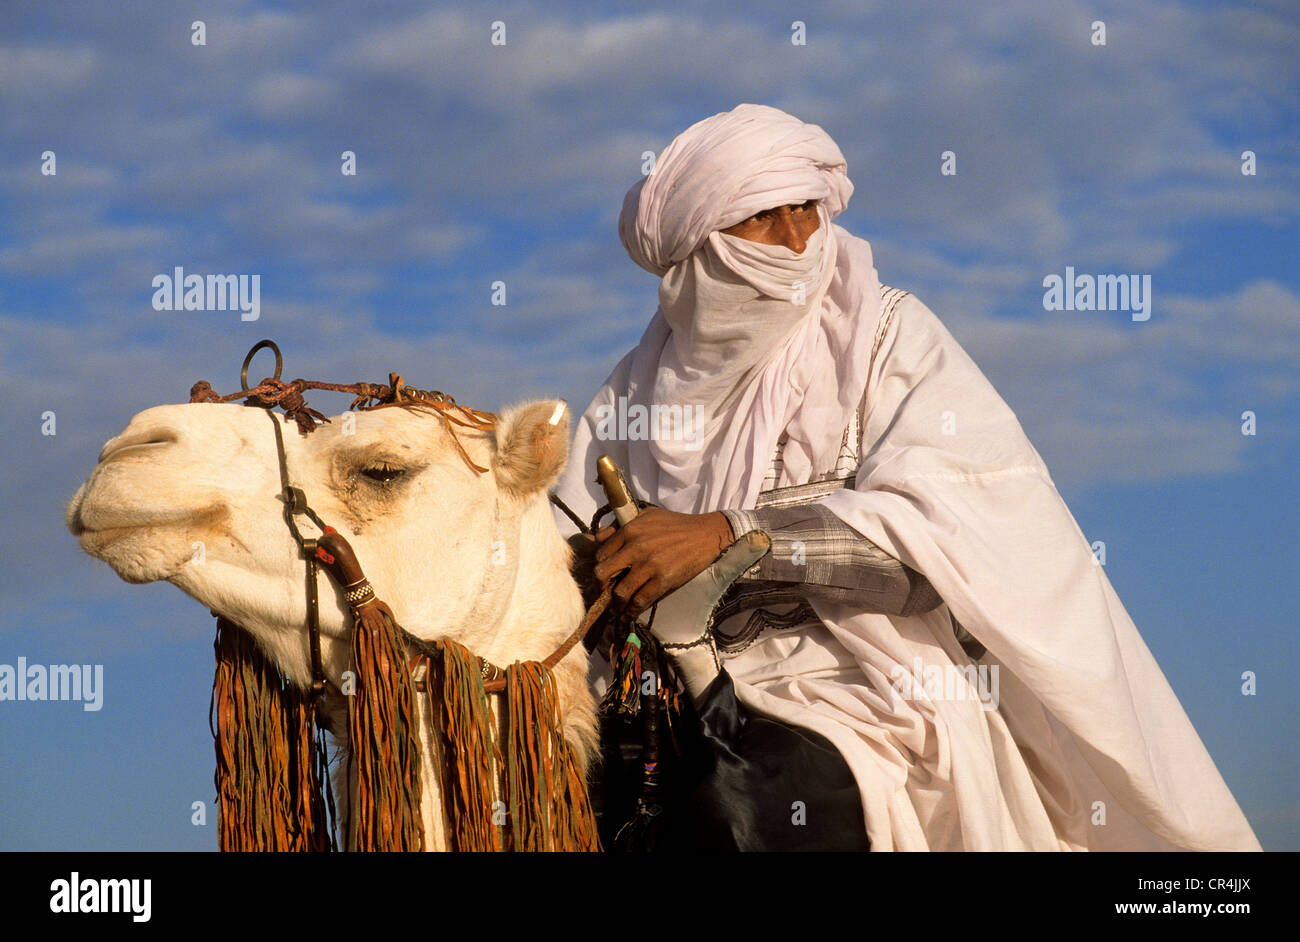 La Tunisie, le Gouvernorat de Kebili, Douz, Festival du désert, les Touaregs sur leurs dromadaires Mehari Banque D'Images